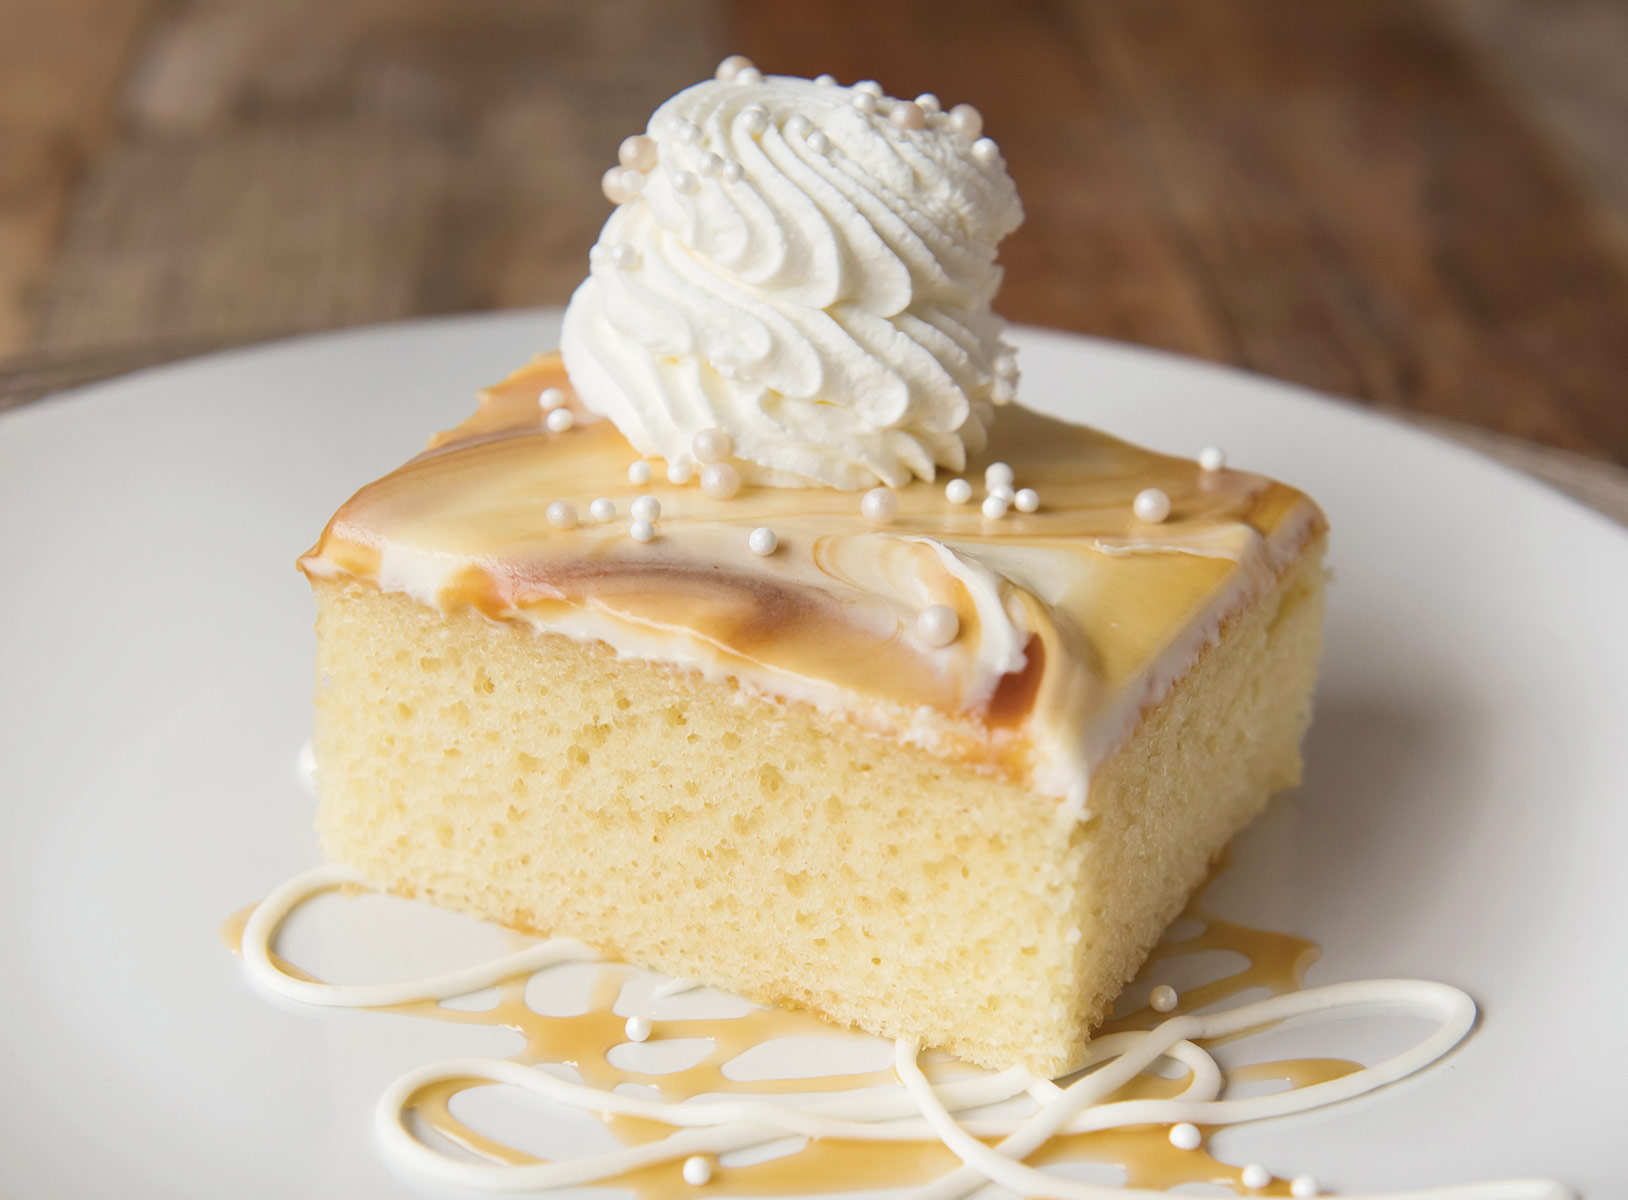 Dessert HoldingsDessert Holdings - Vanilla Caramel Swirl Cake | The Original Cakerie